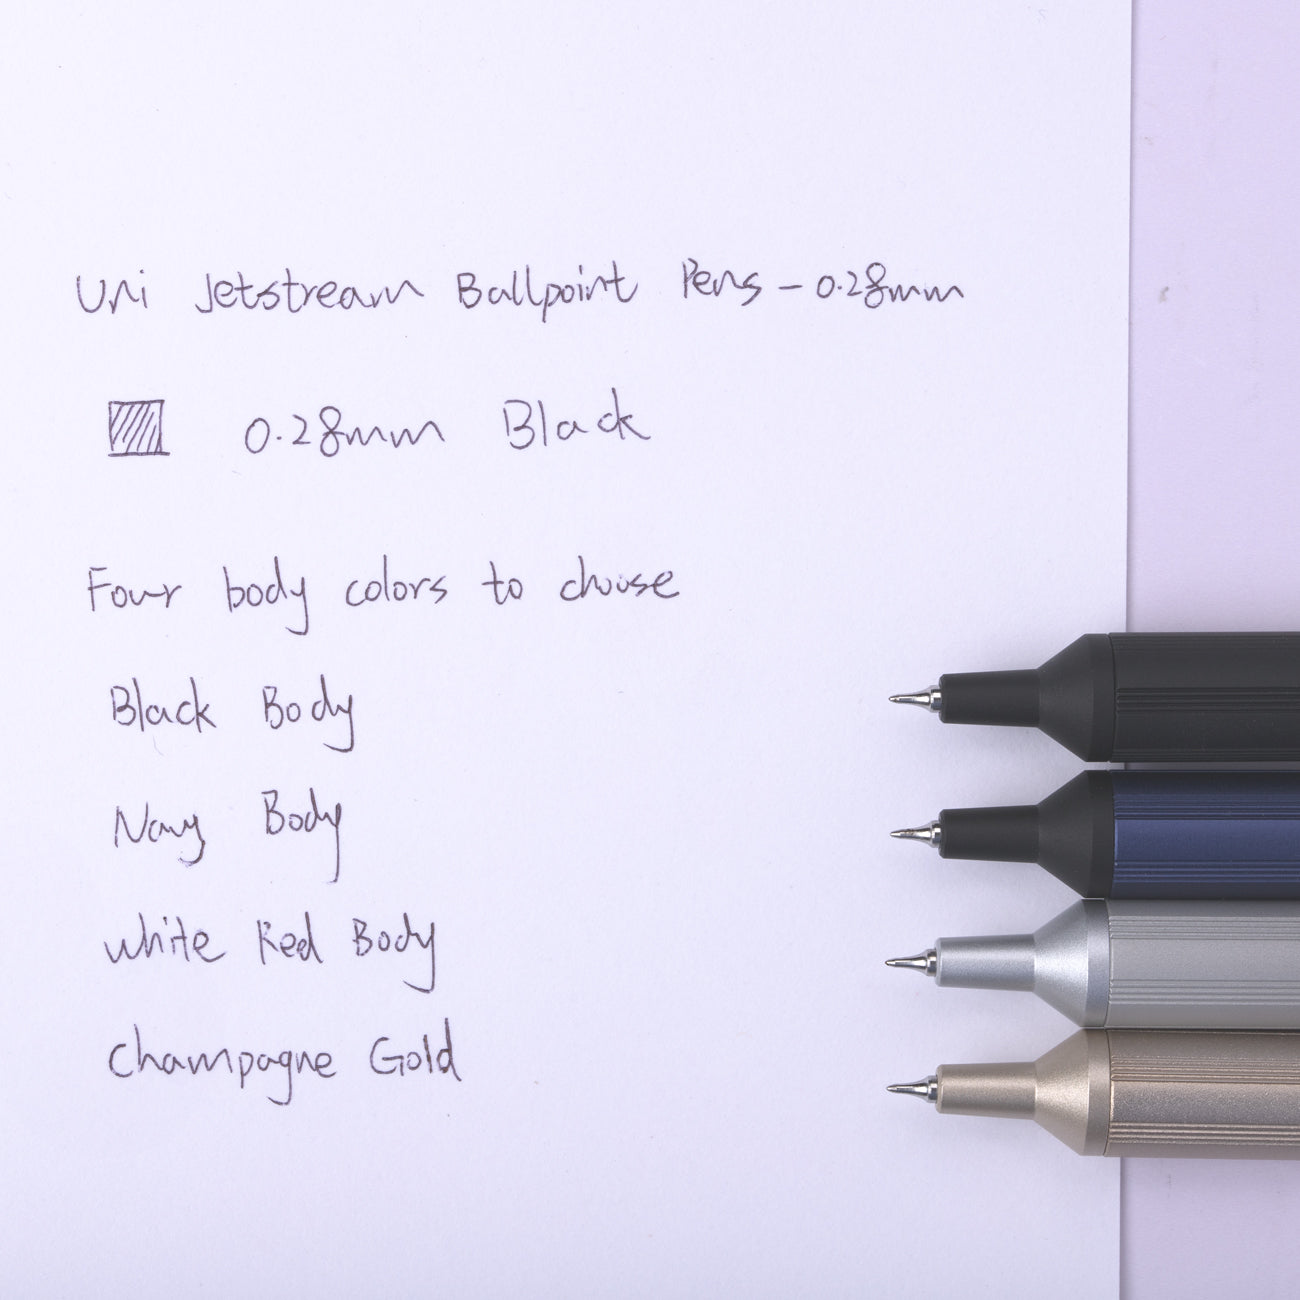 Uni Jetstream Edge Ballpoint Pen - 0.28 mm - White Red Body